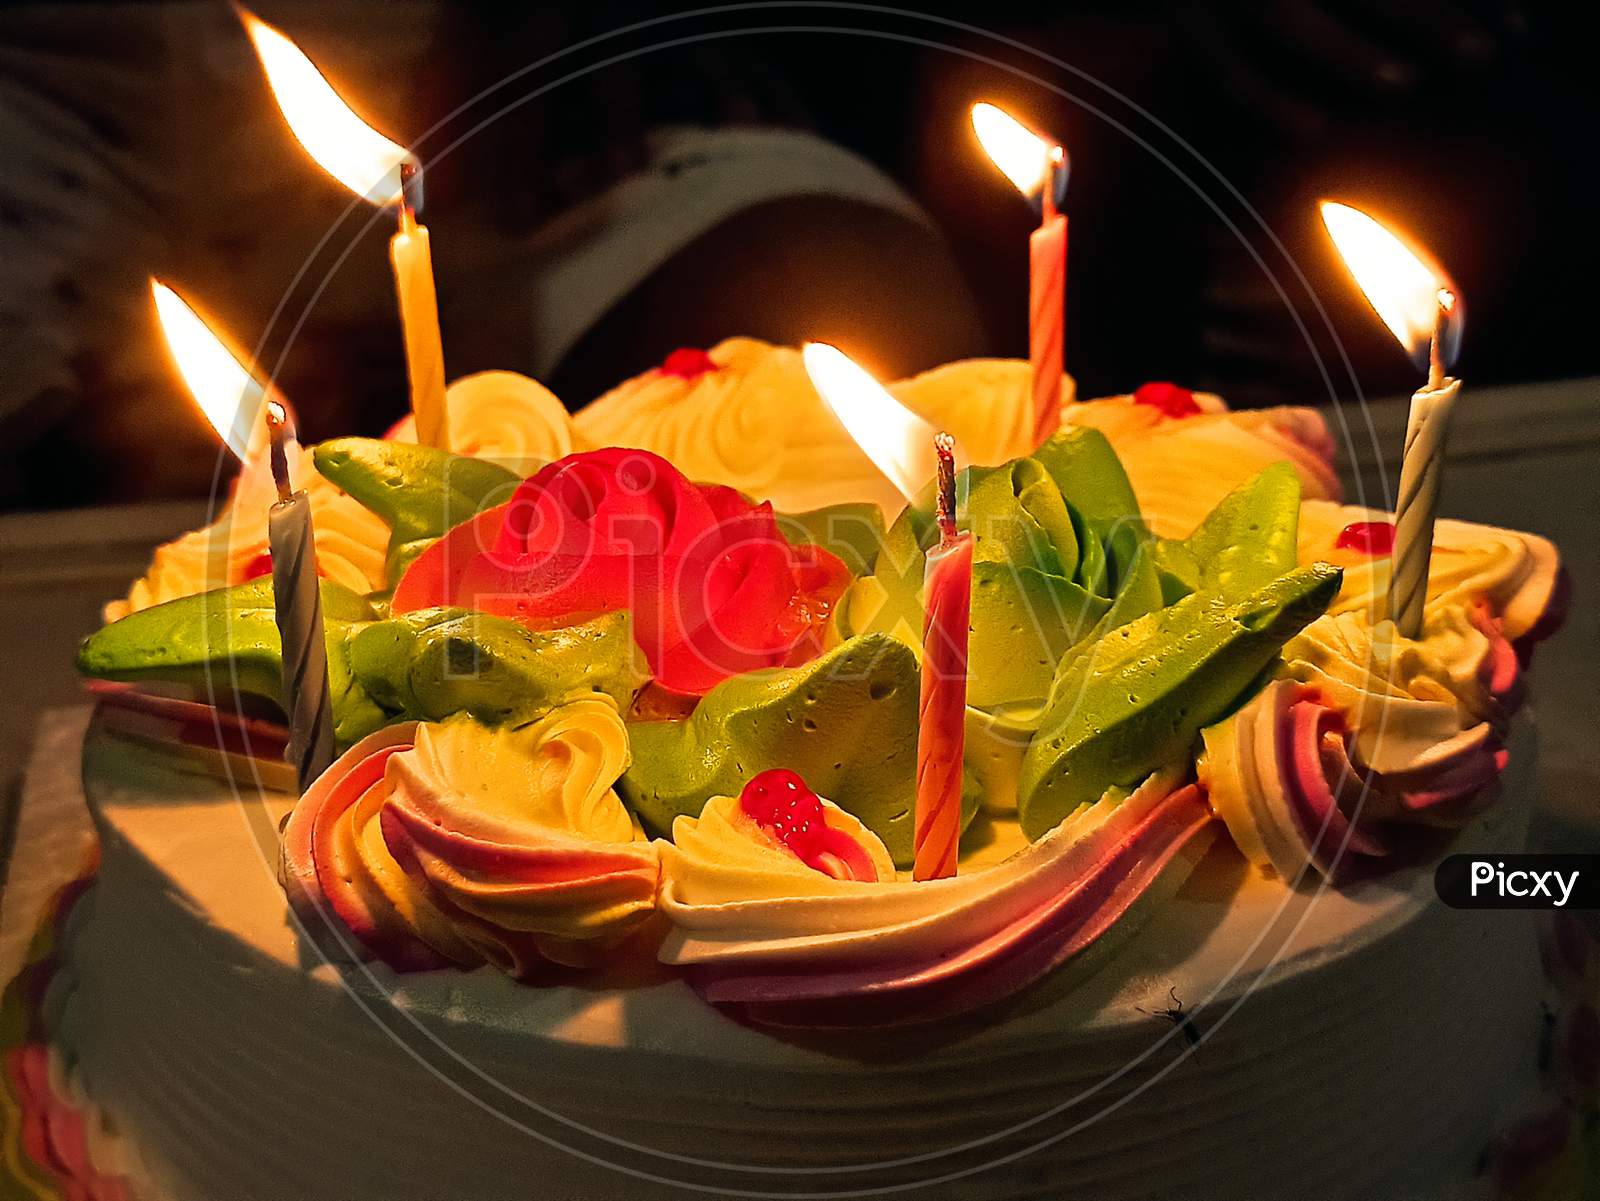 PIZZA WORLD - Happy birthday to Mr. Aditya many many happy... | Facebook